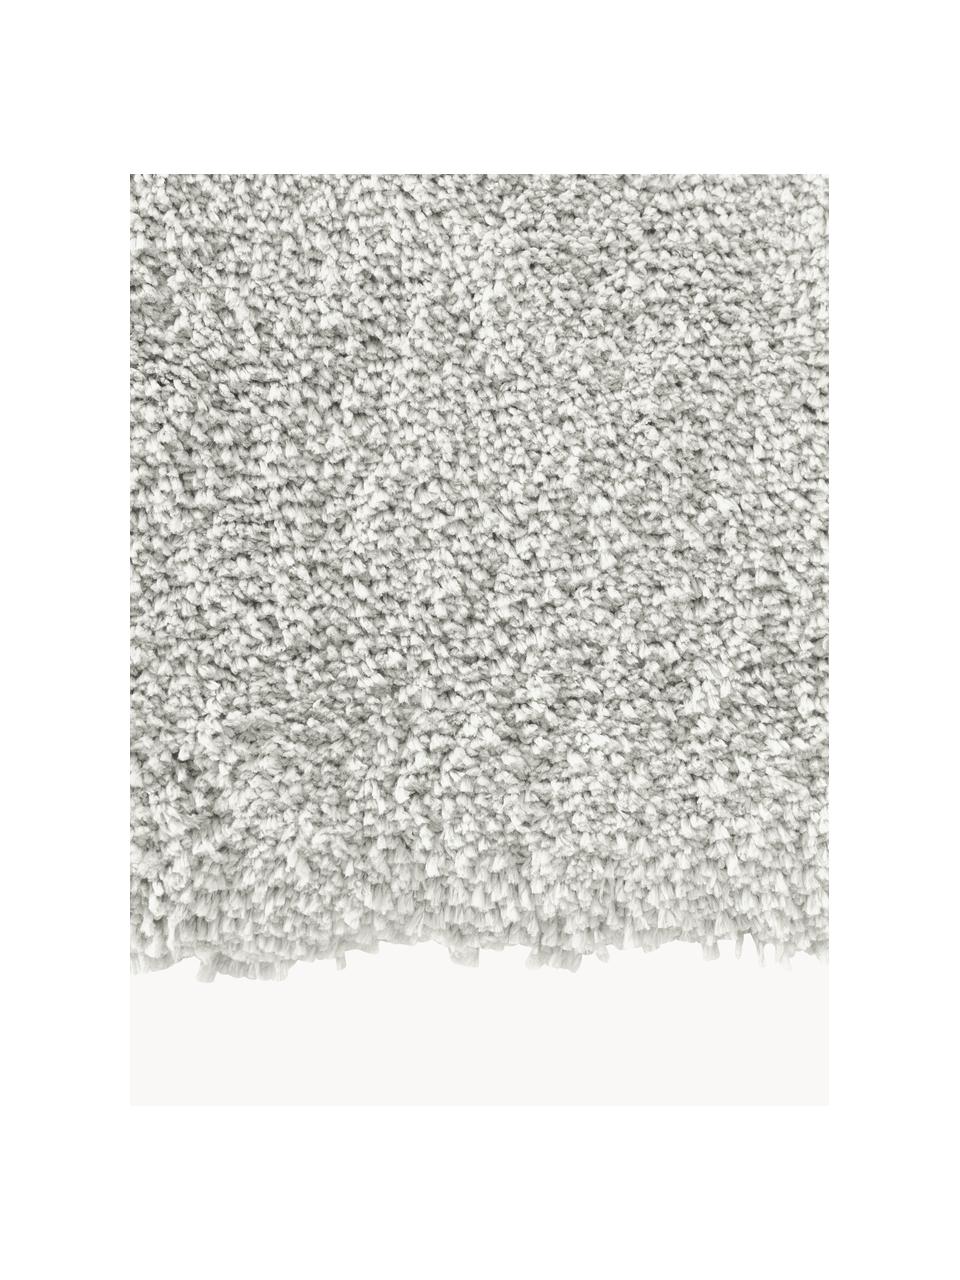 Pluizig hoogpolig vloerkleed Leighton, Onderzijde: 70% polyester, 30% katoen, Lichtgrijs, B 200 x L 300 cm (maat L)